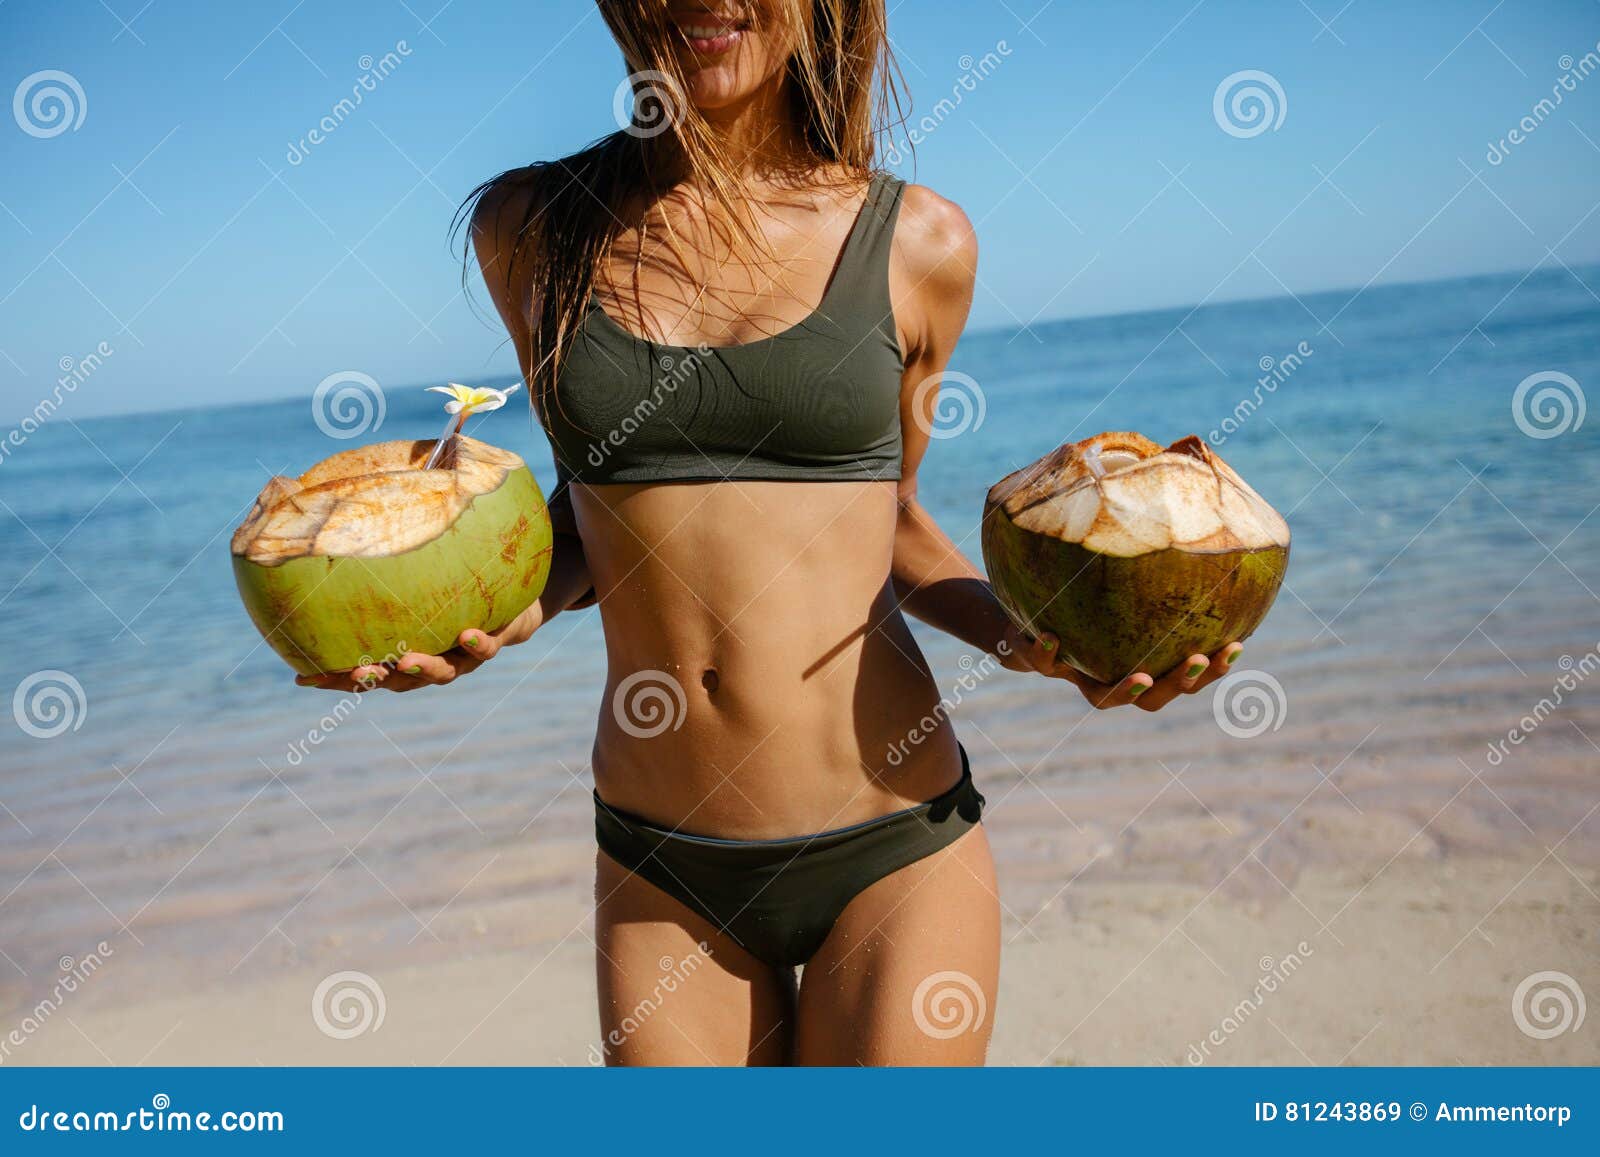 Wantrouwen Caroline informeel Vrouw in Bikini Op Het Strand Met Verse Kokosnoten Stock Afbeelding - Image  of vrijetijdsbesteding, wijfje: 81243869